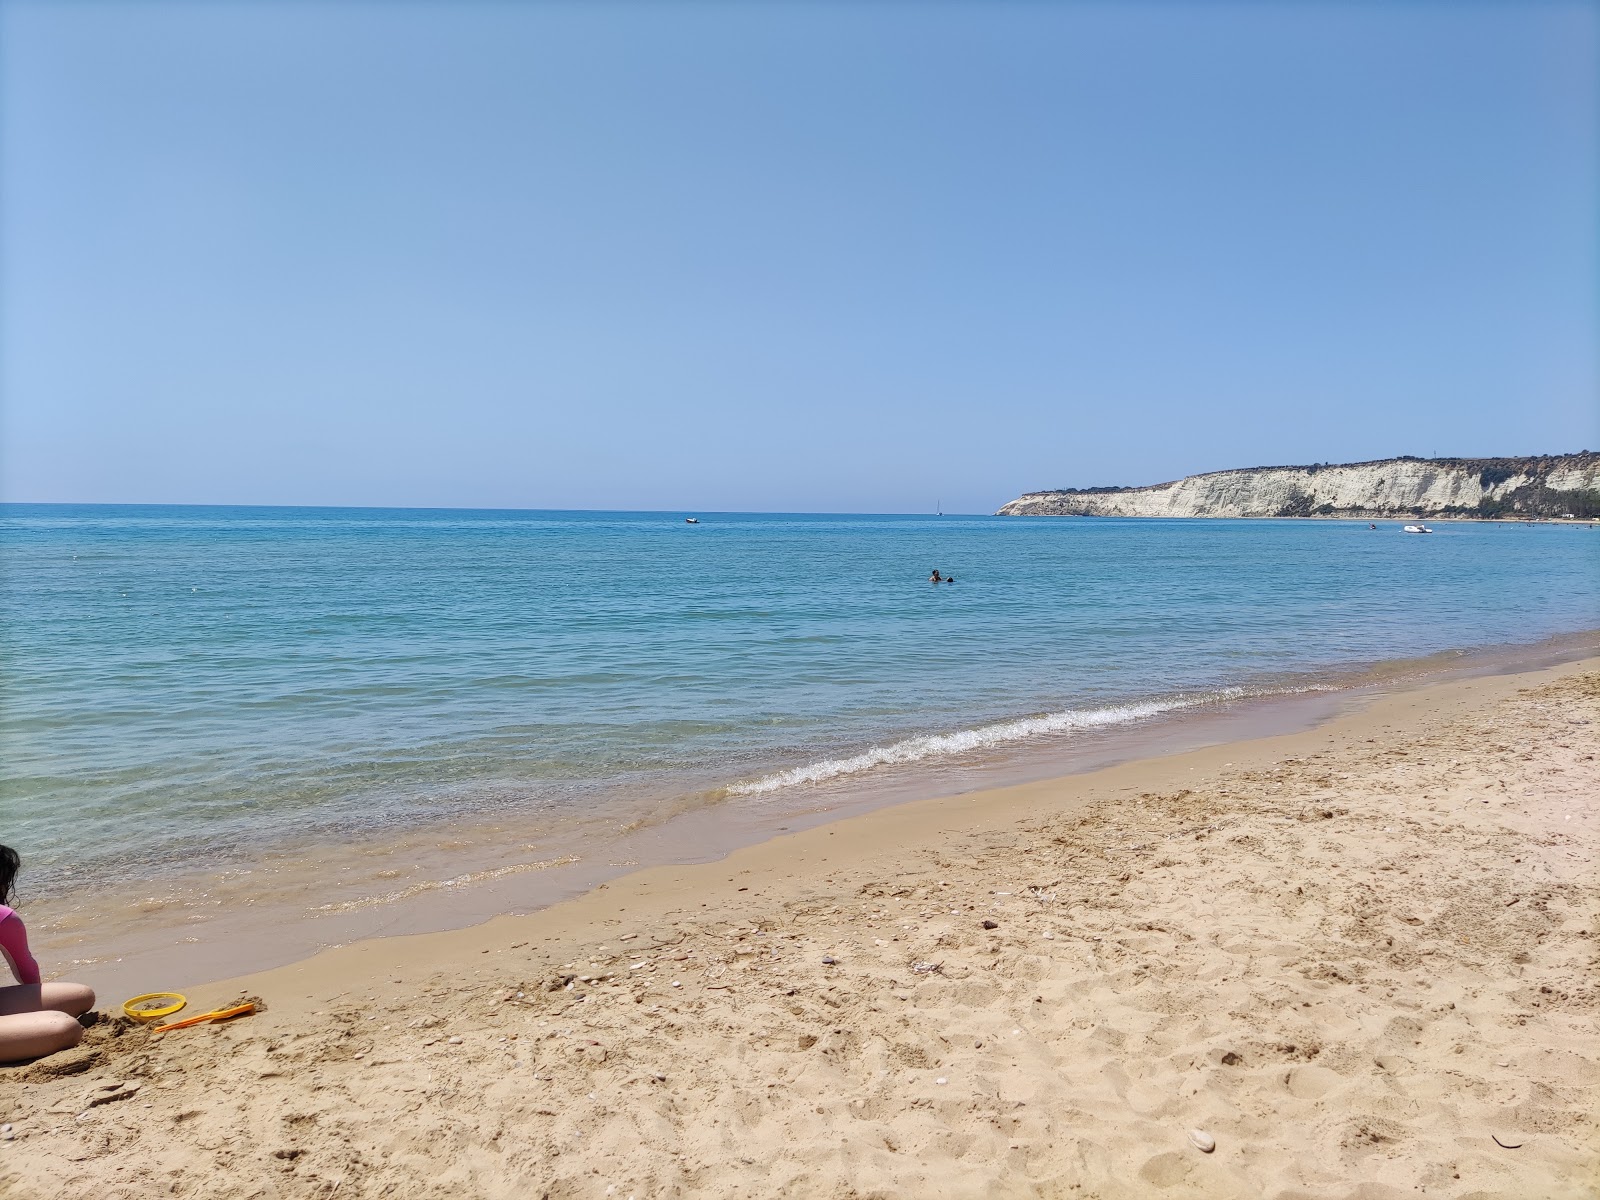 Foto de Spiaggia Di Eraclea Minoa - lugar popular entre los conocedores del relax